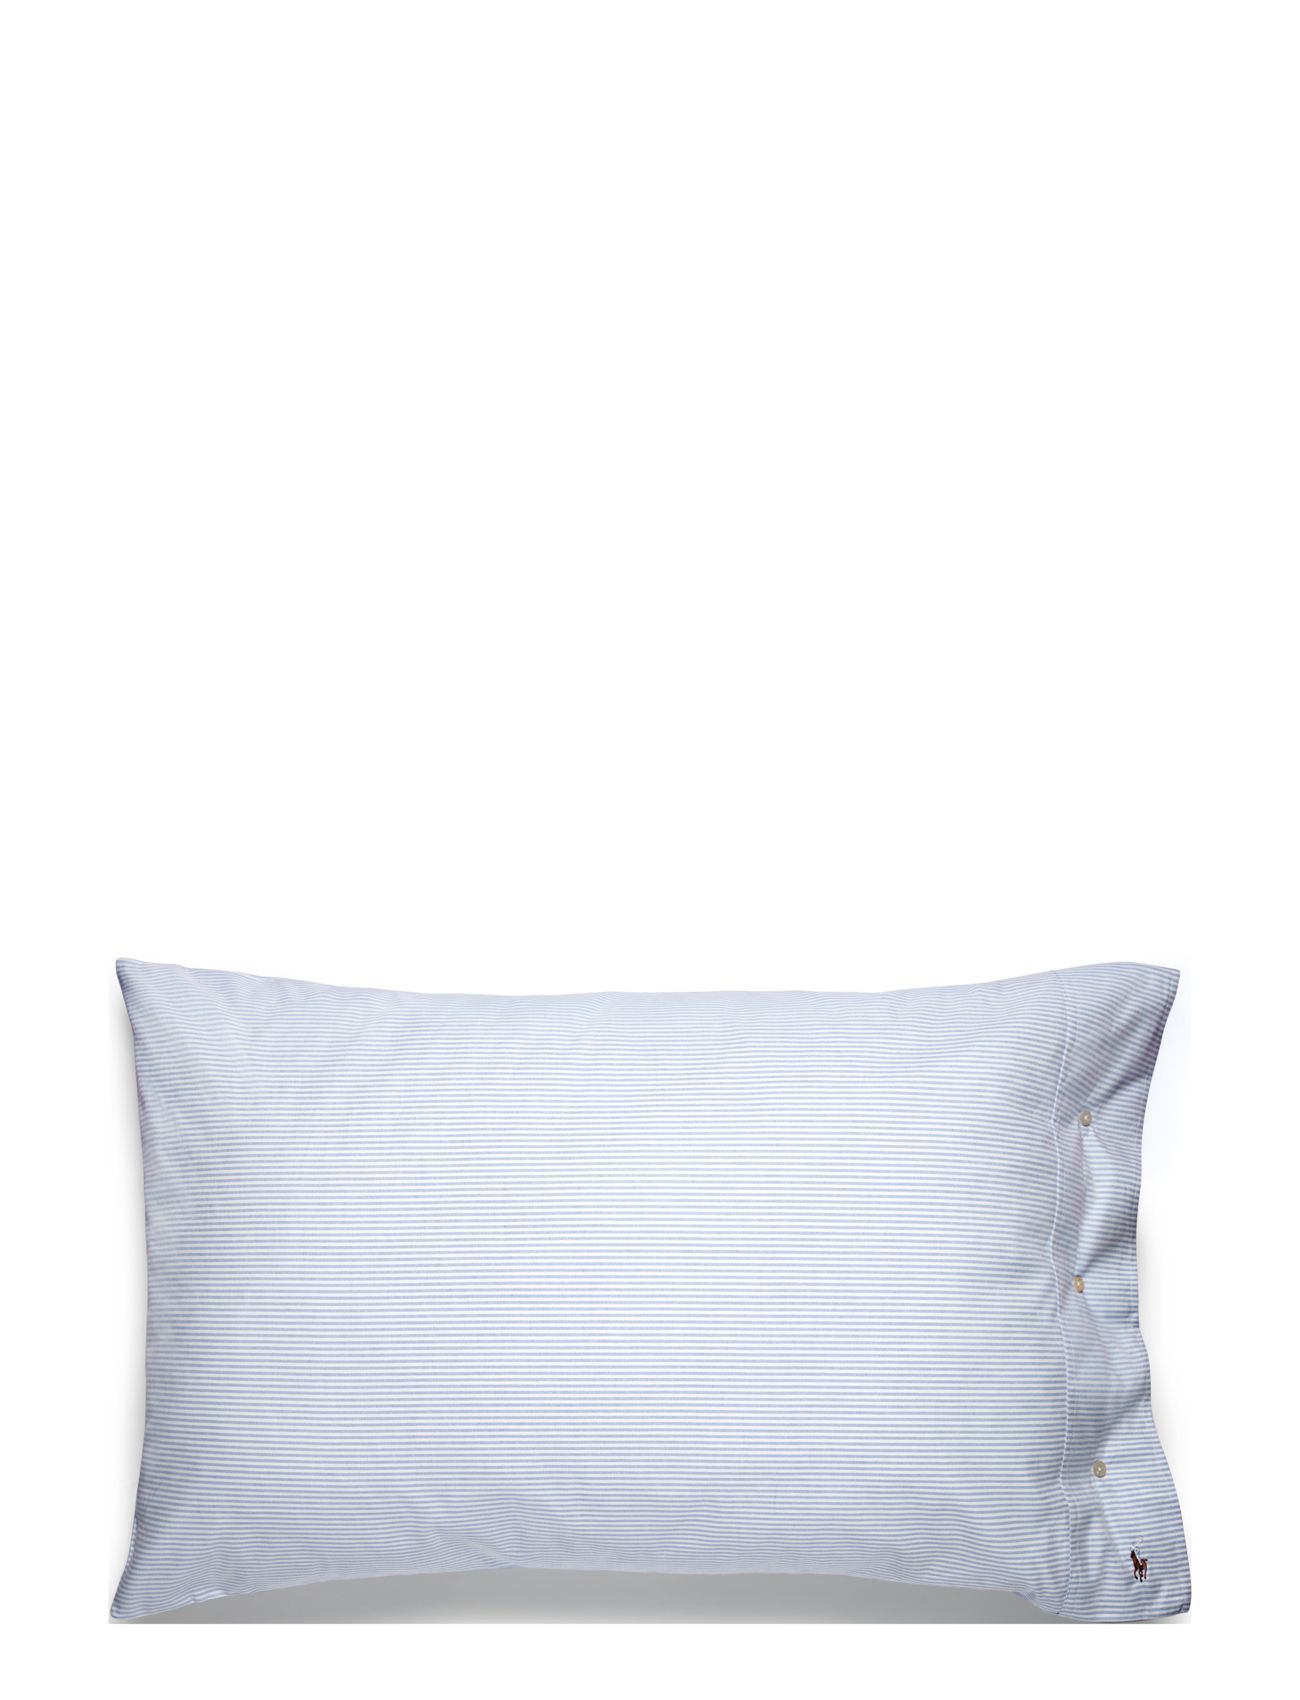 Ralph Lauren Home Oxford Pillow Case - Pillowcases 